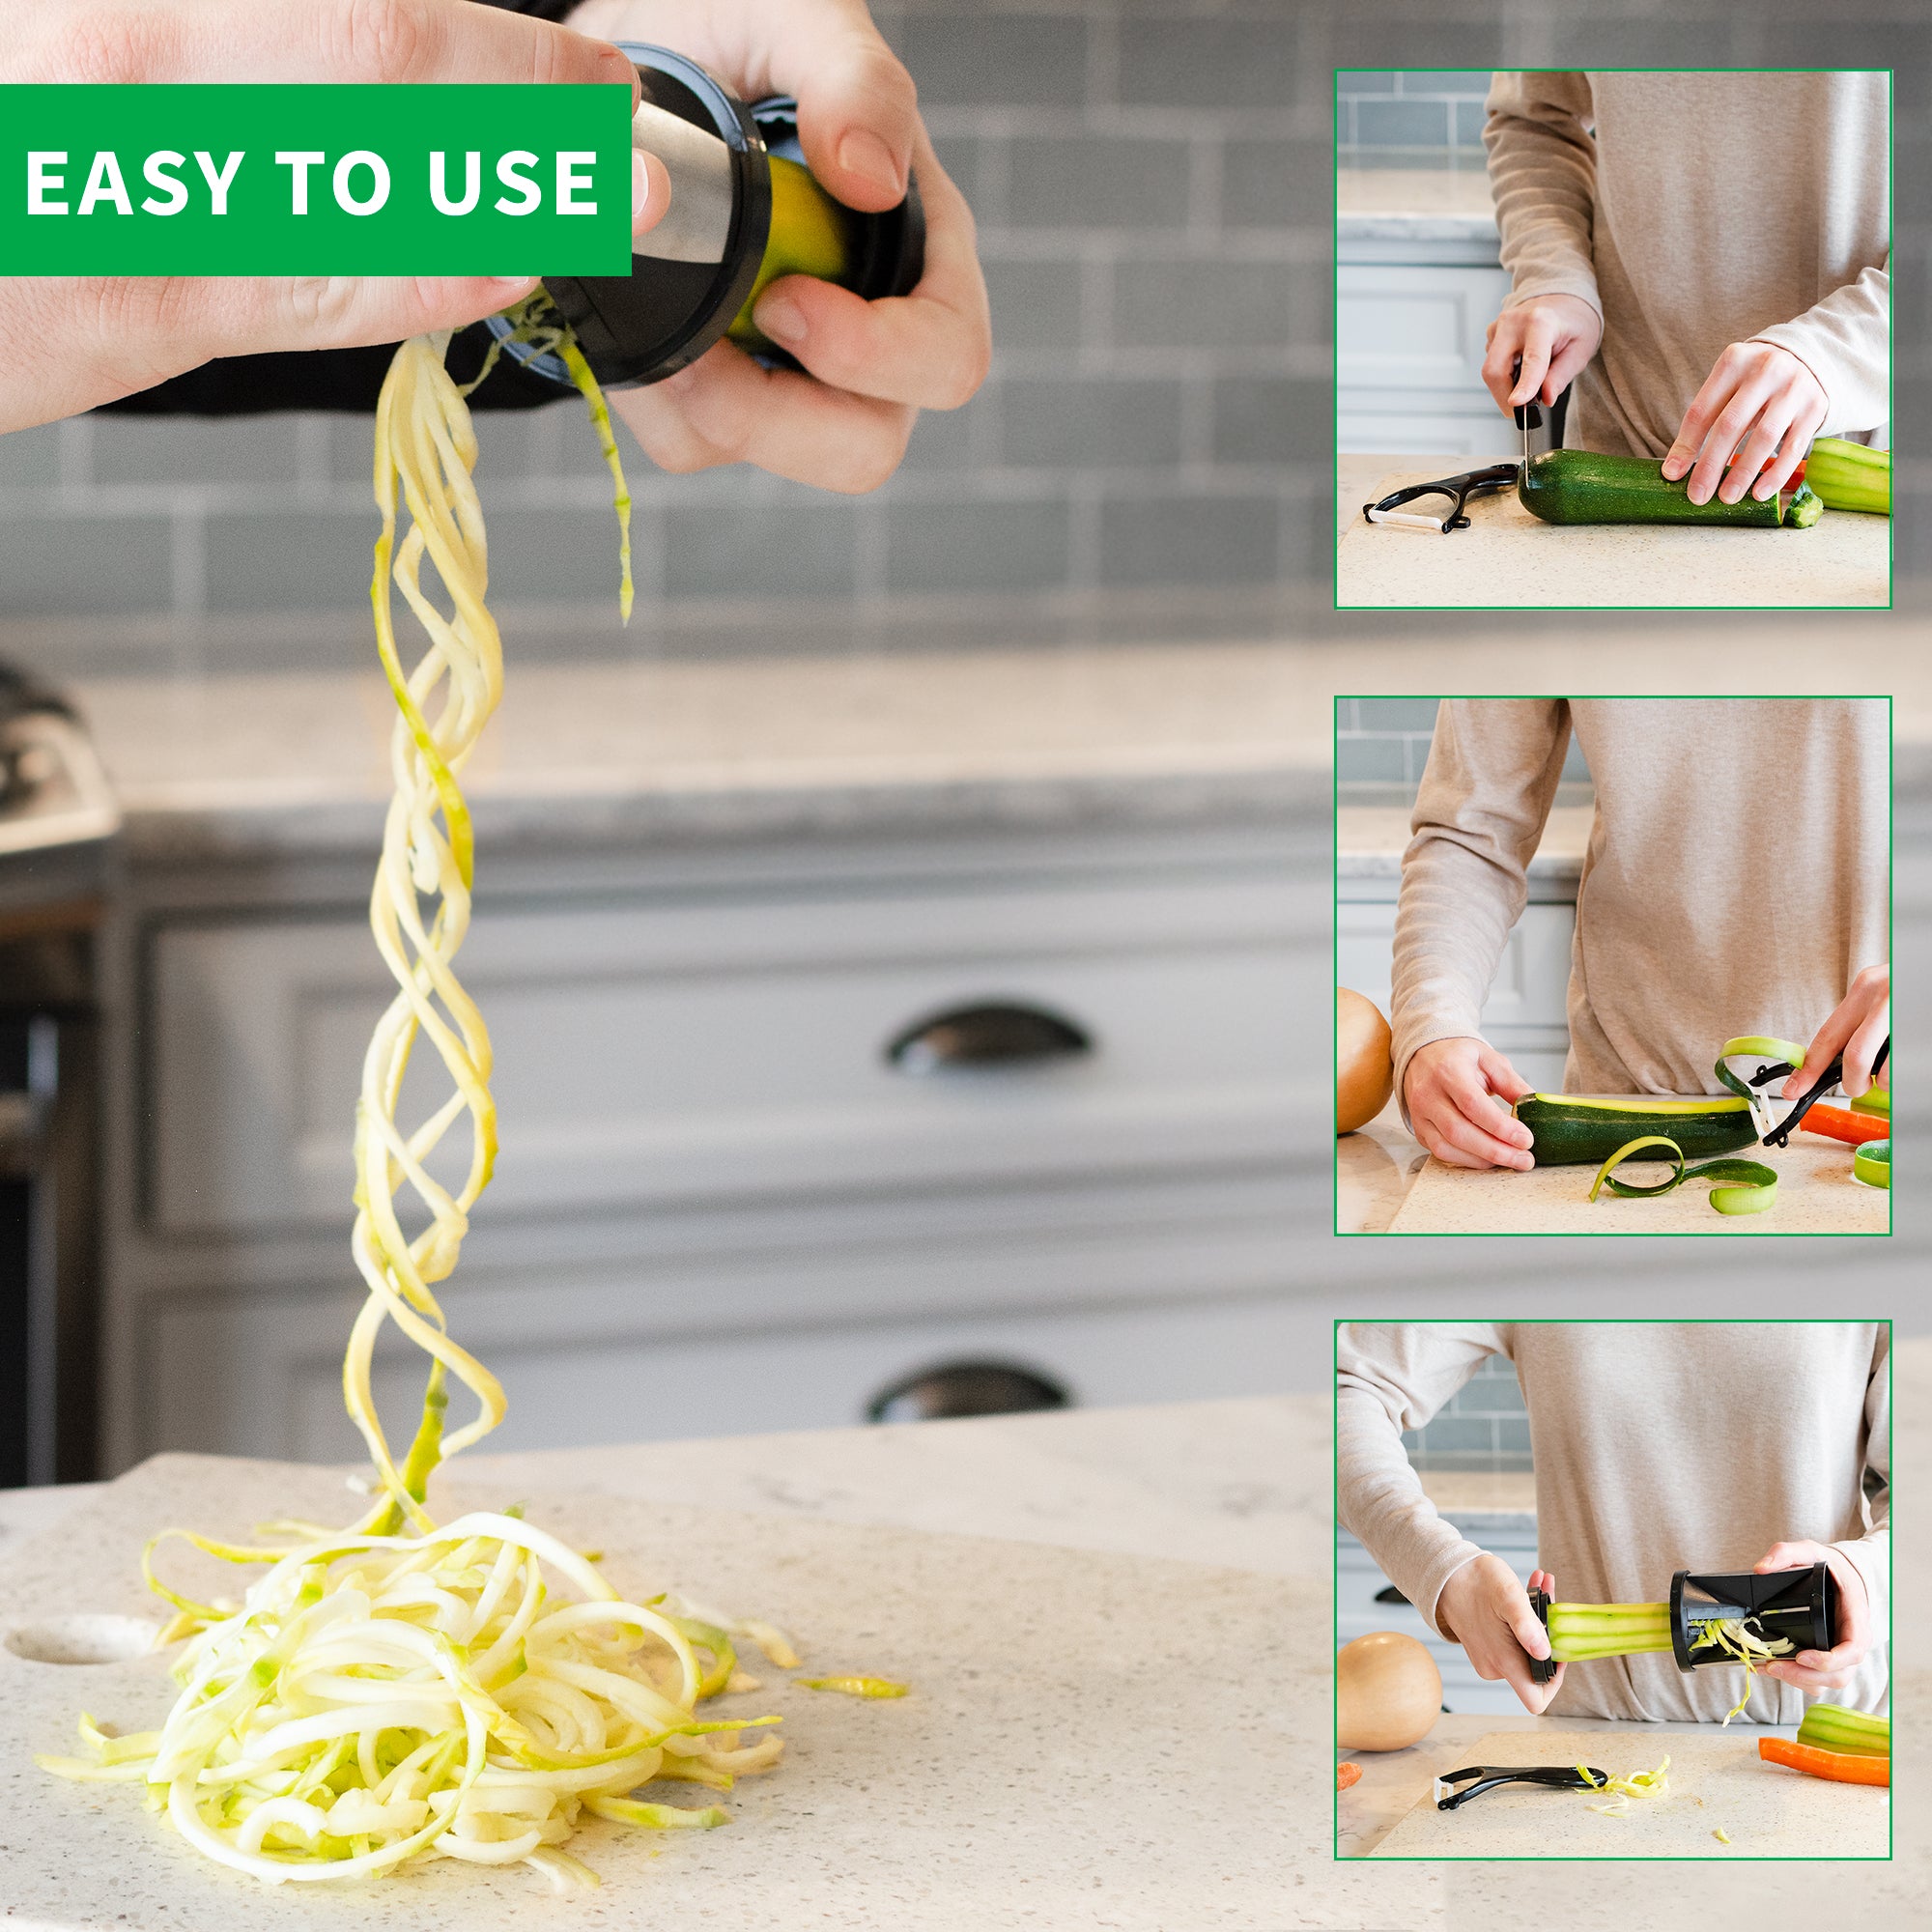 Easy Vegetable Noodler